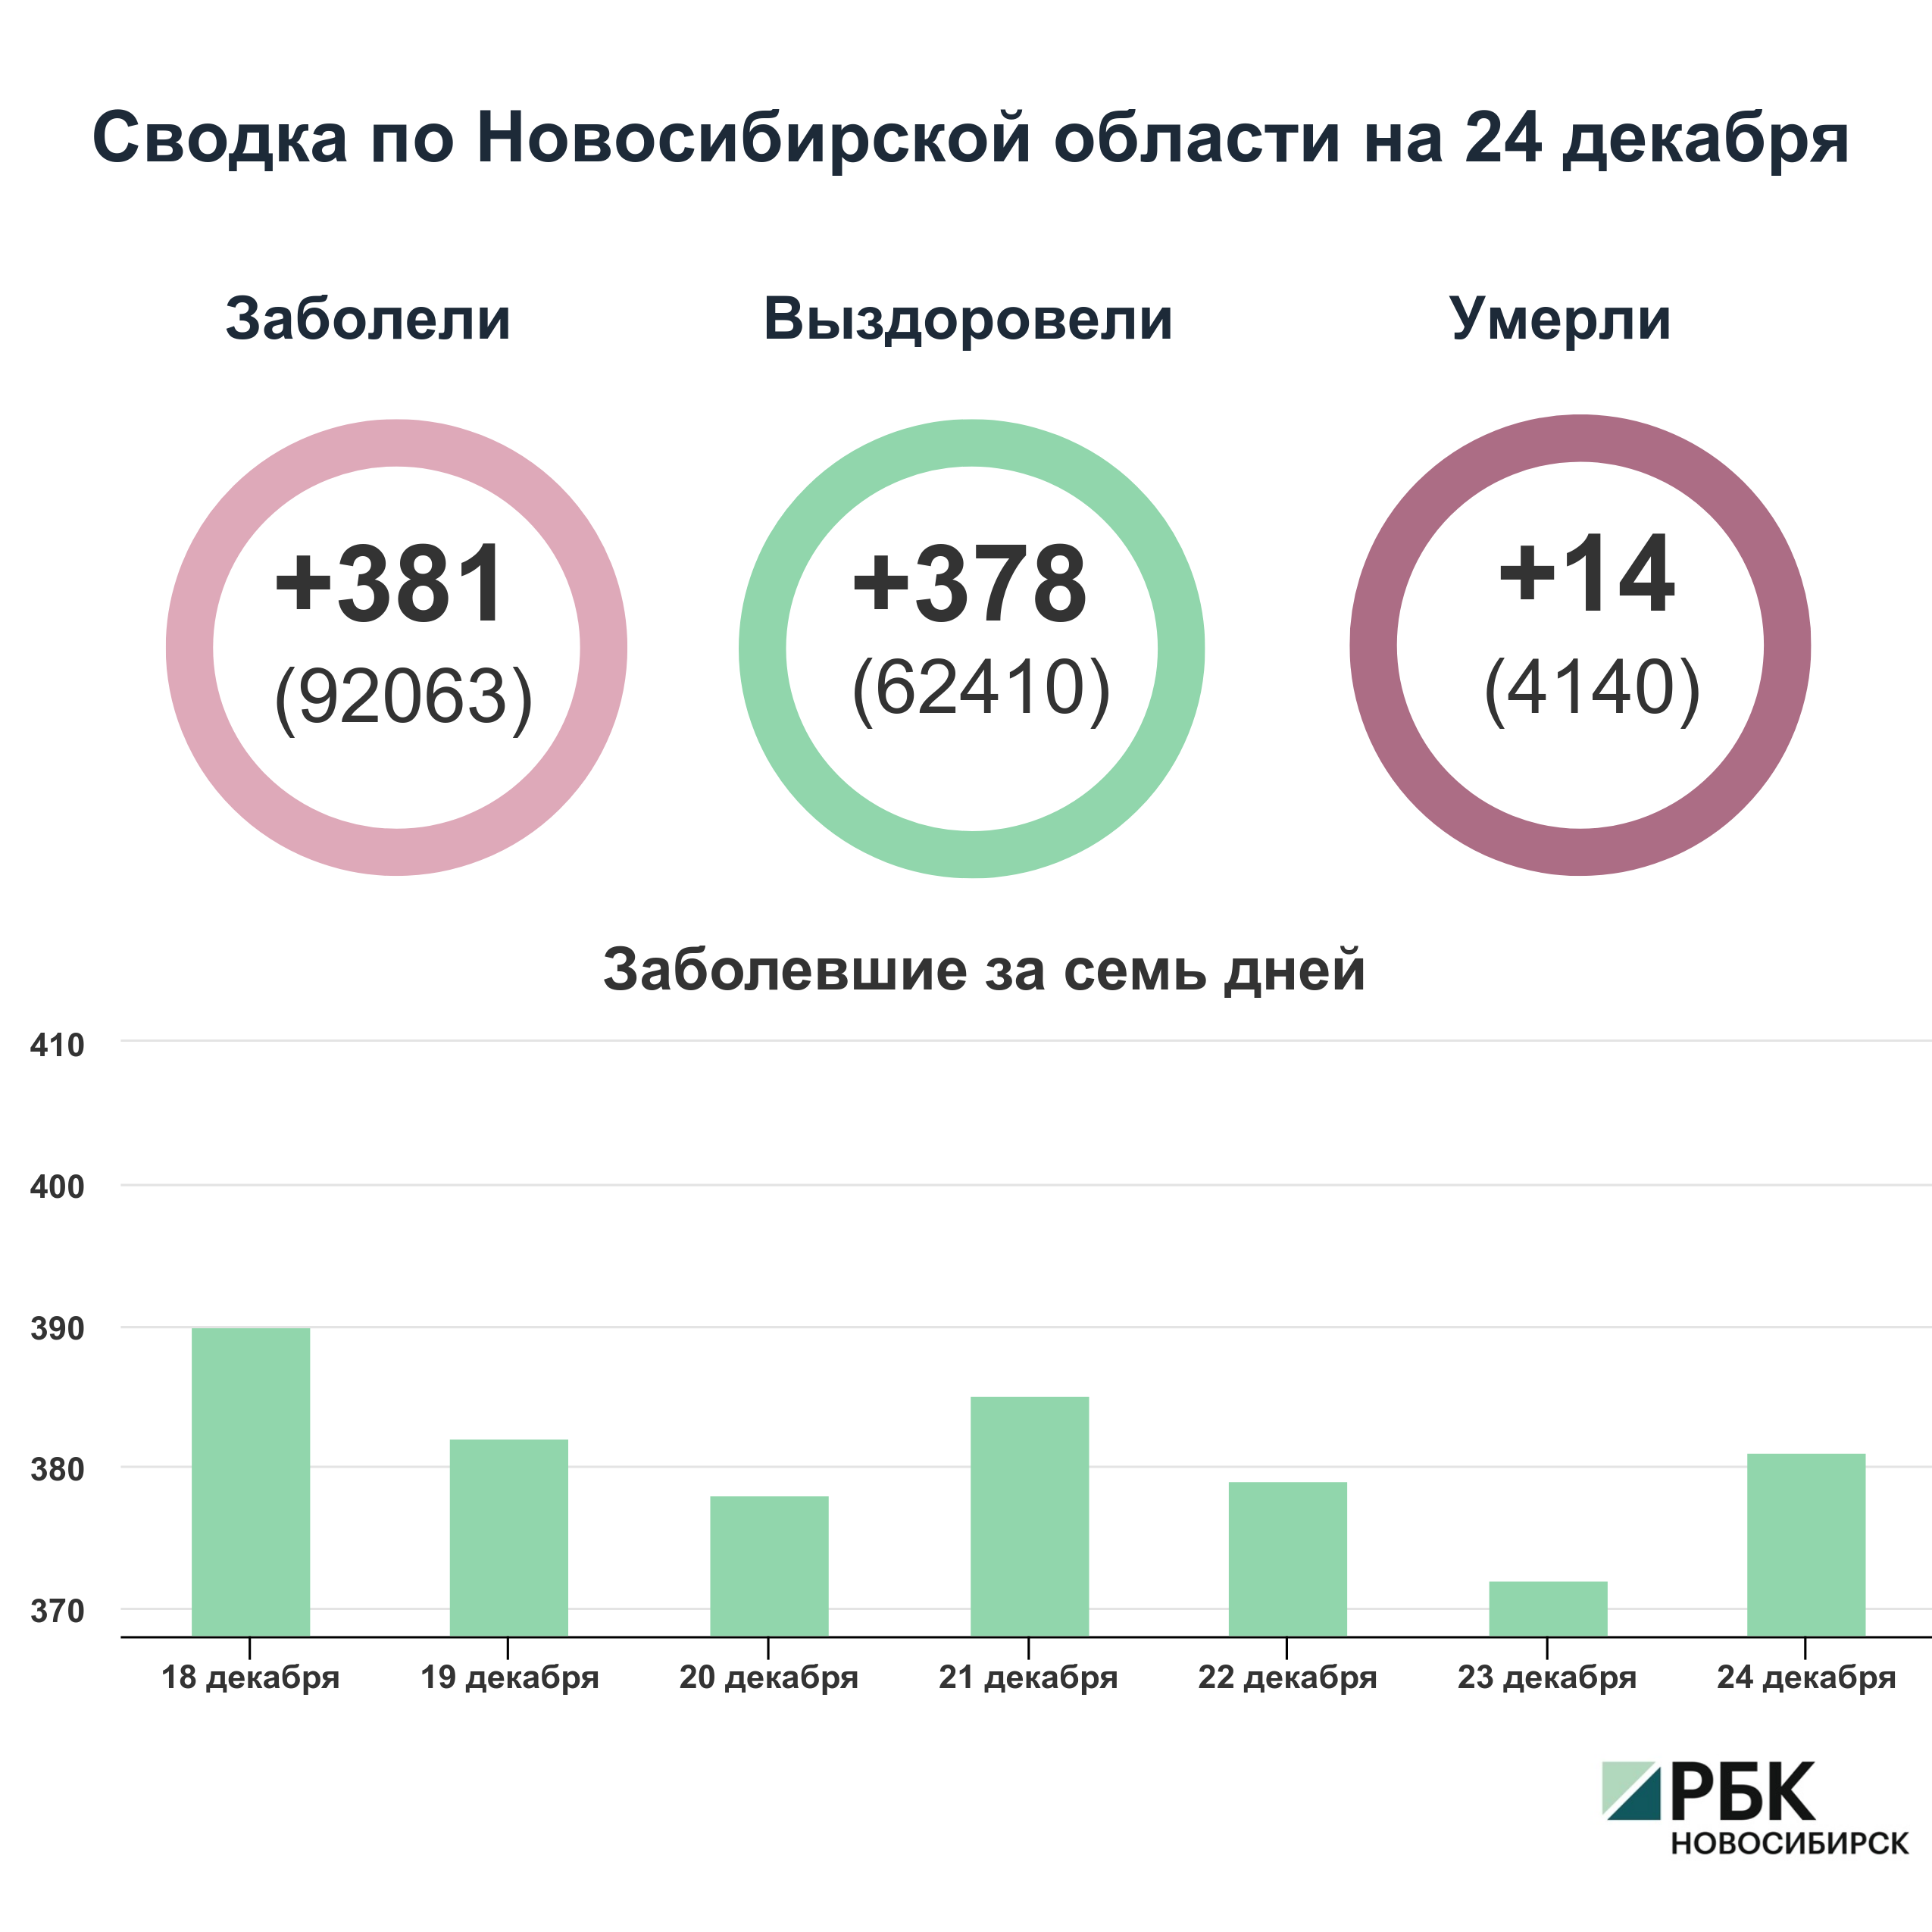 Коронавирус в Новосибирске: сводка на 24 декабря